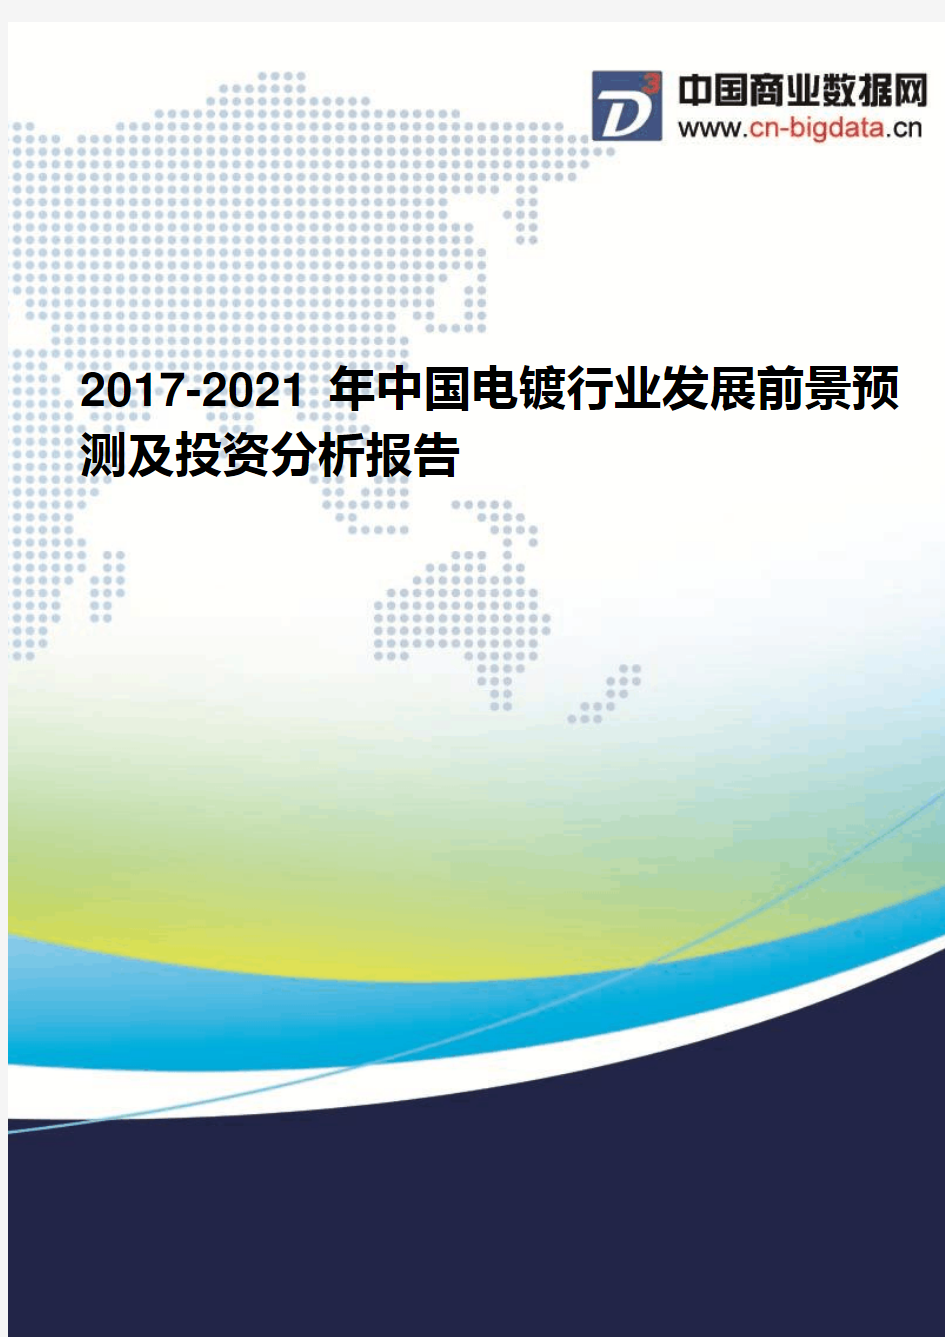 2017-2021年中国电镀行业发展前景预测及投资分析报告(2017版目录)